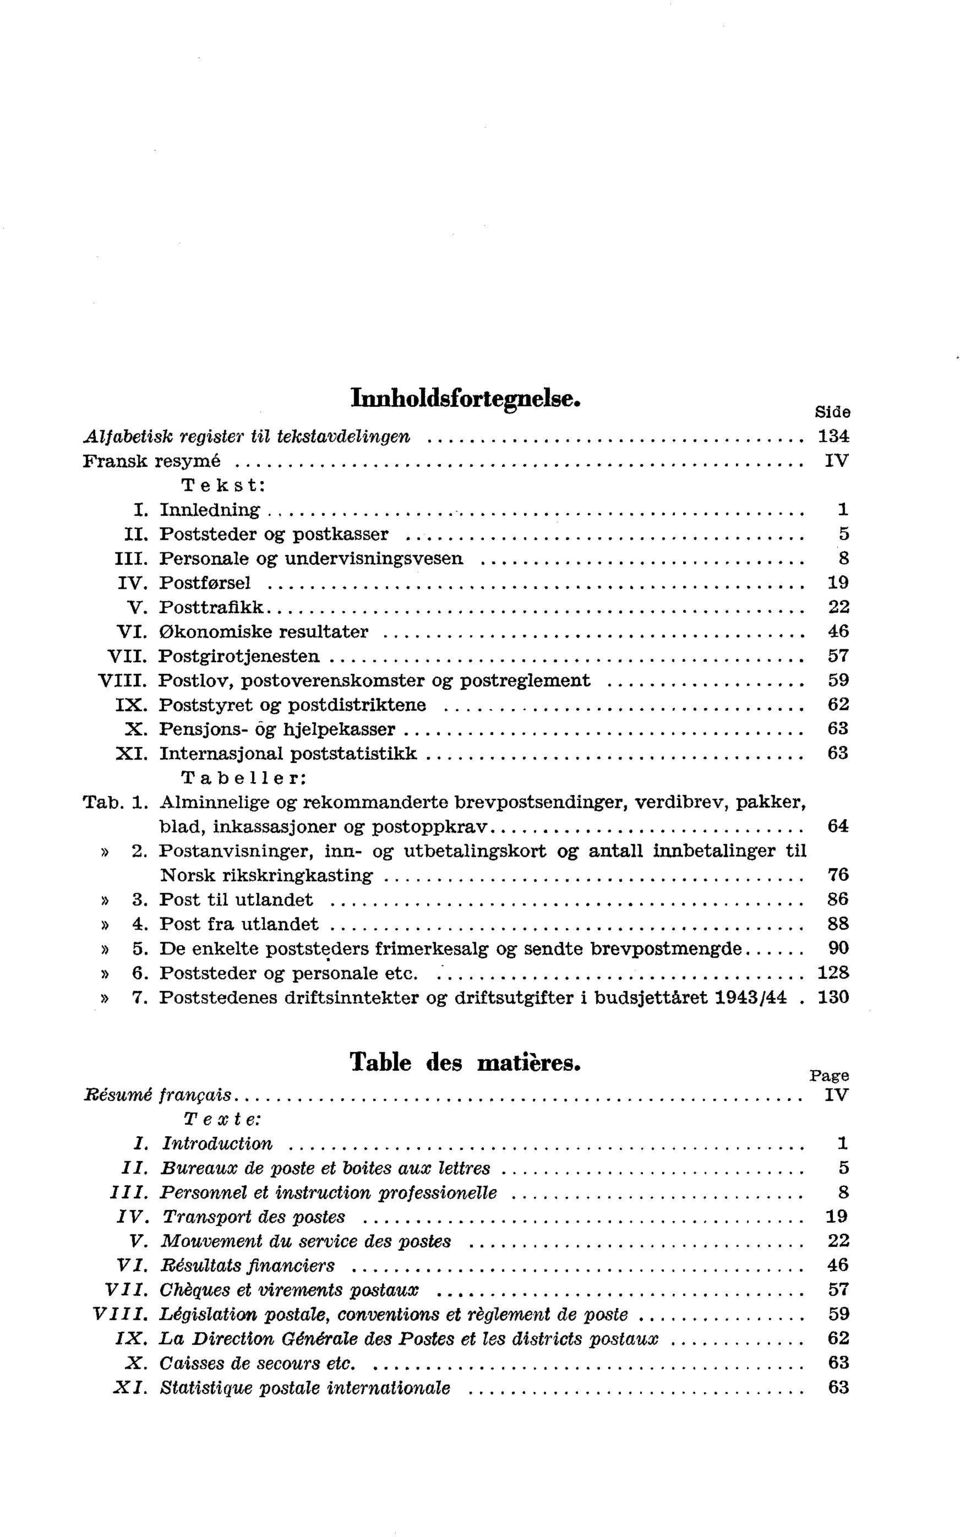 Internasjonal poststatistikk 63 Tabeller: Tab.. Alminnelige og rekommanderte, verdibrev, pakker, blad, inkassasjoner og postoppkrav 64» 2.